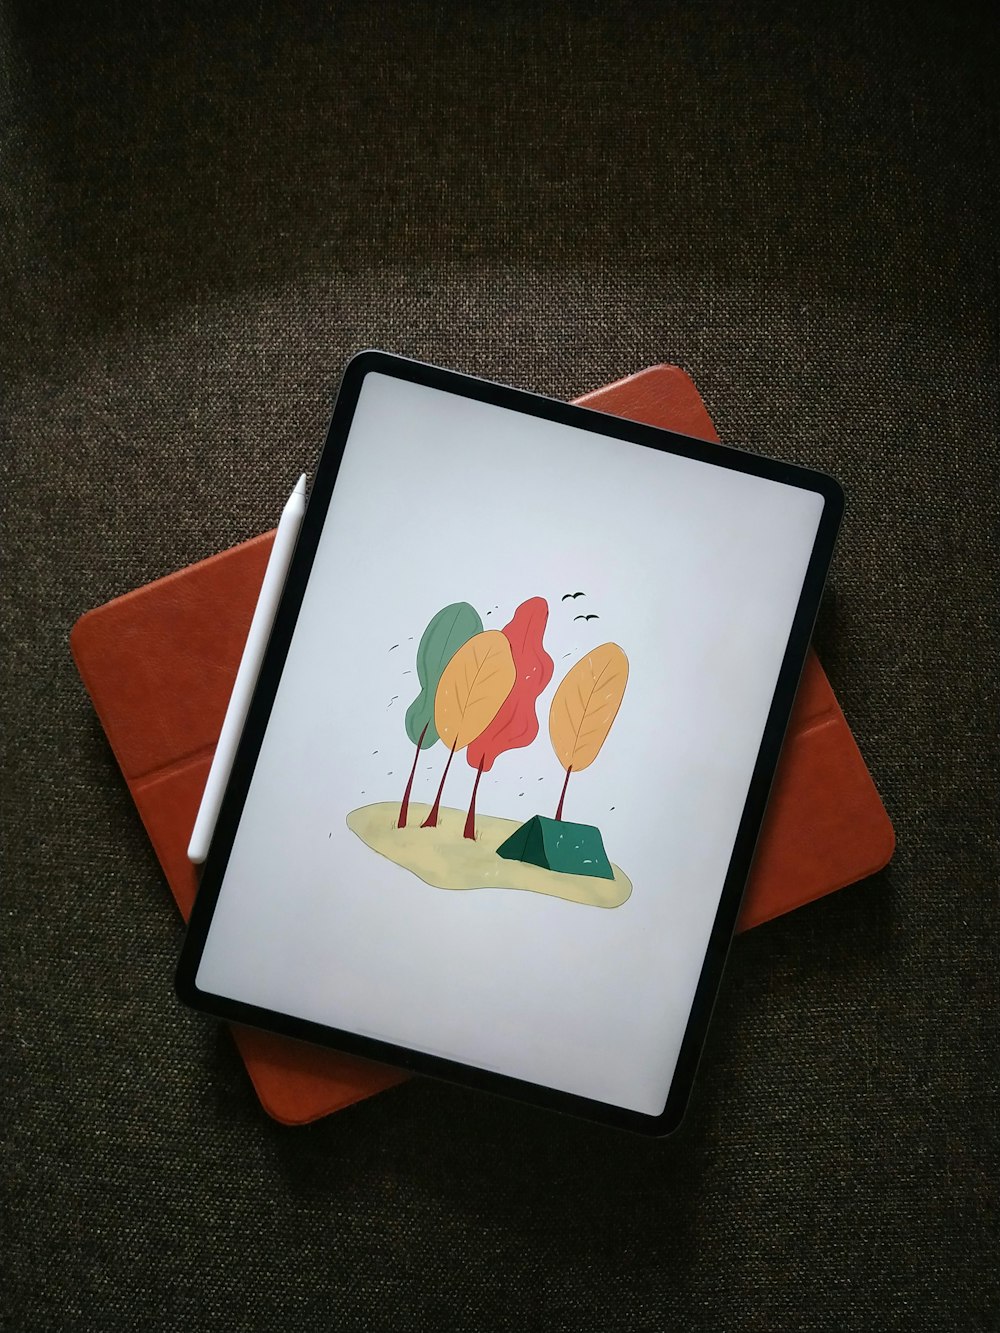 iPad blanc sur textile orange